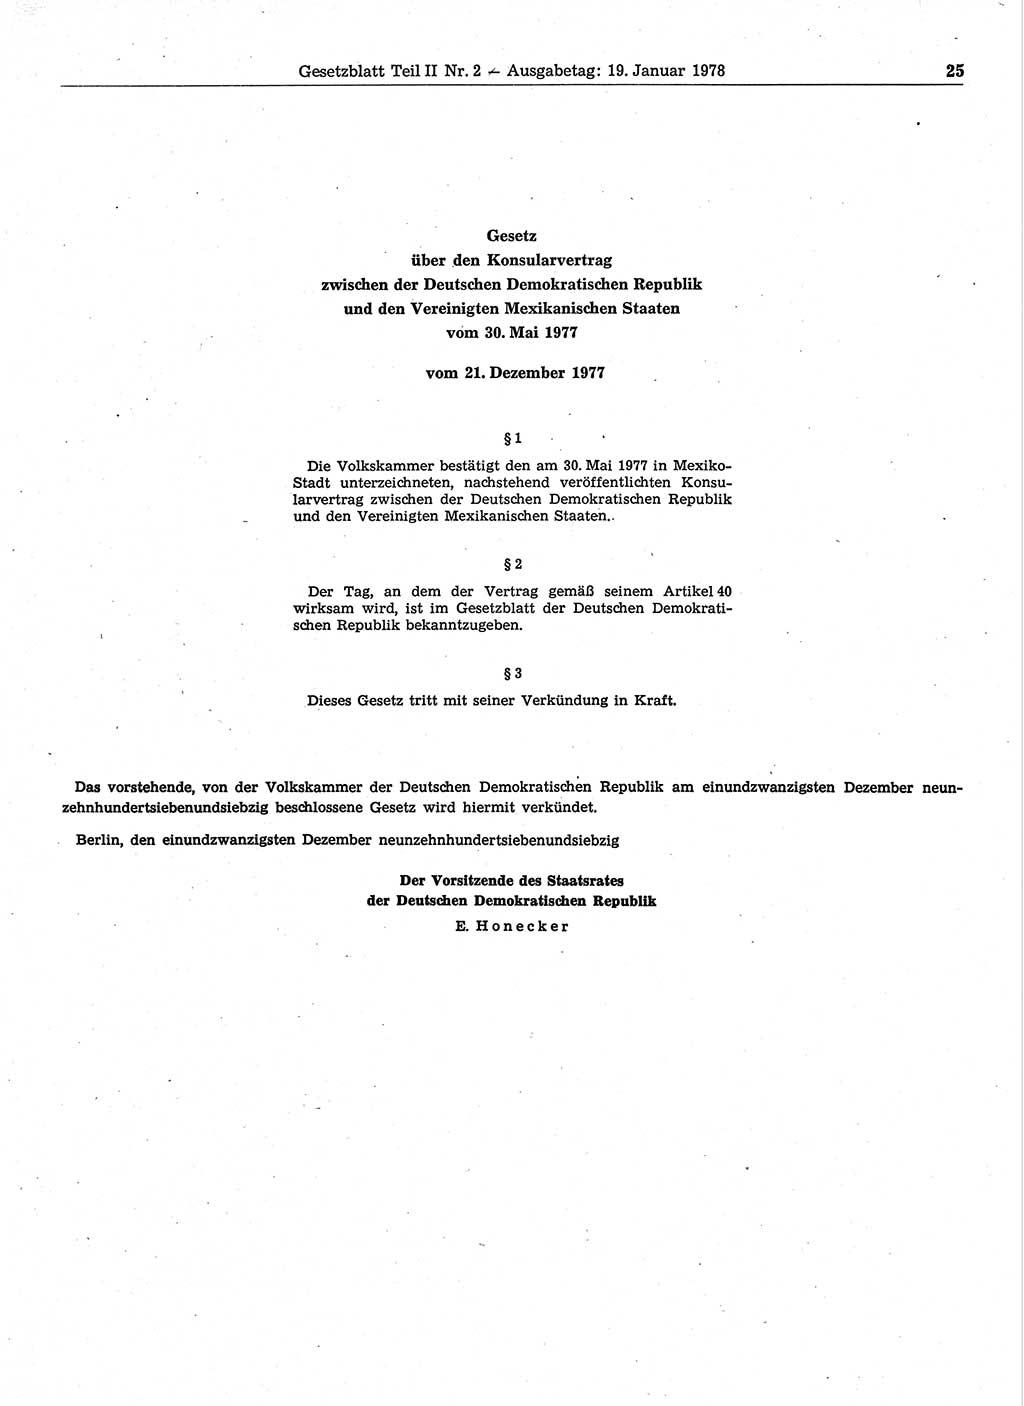 Gesetzblatt (GBl.) der Deutschen Demokratischen Republik (DDR) Teil ⅠⅠ 1978, Seite 25 (GBl. DDR ⅠⅠ 1978, S. 25)